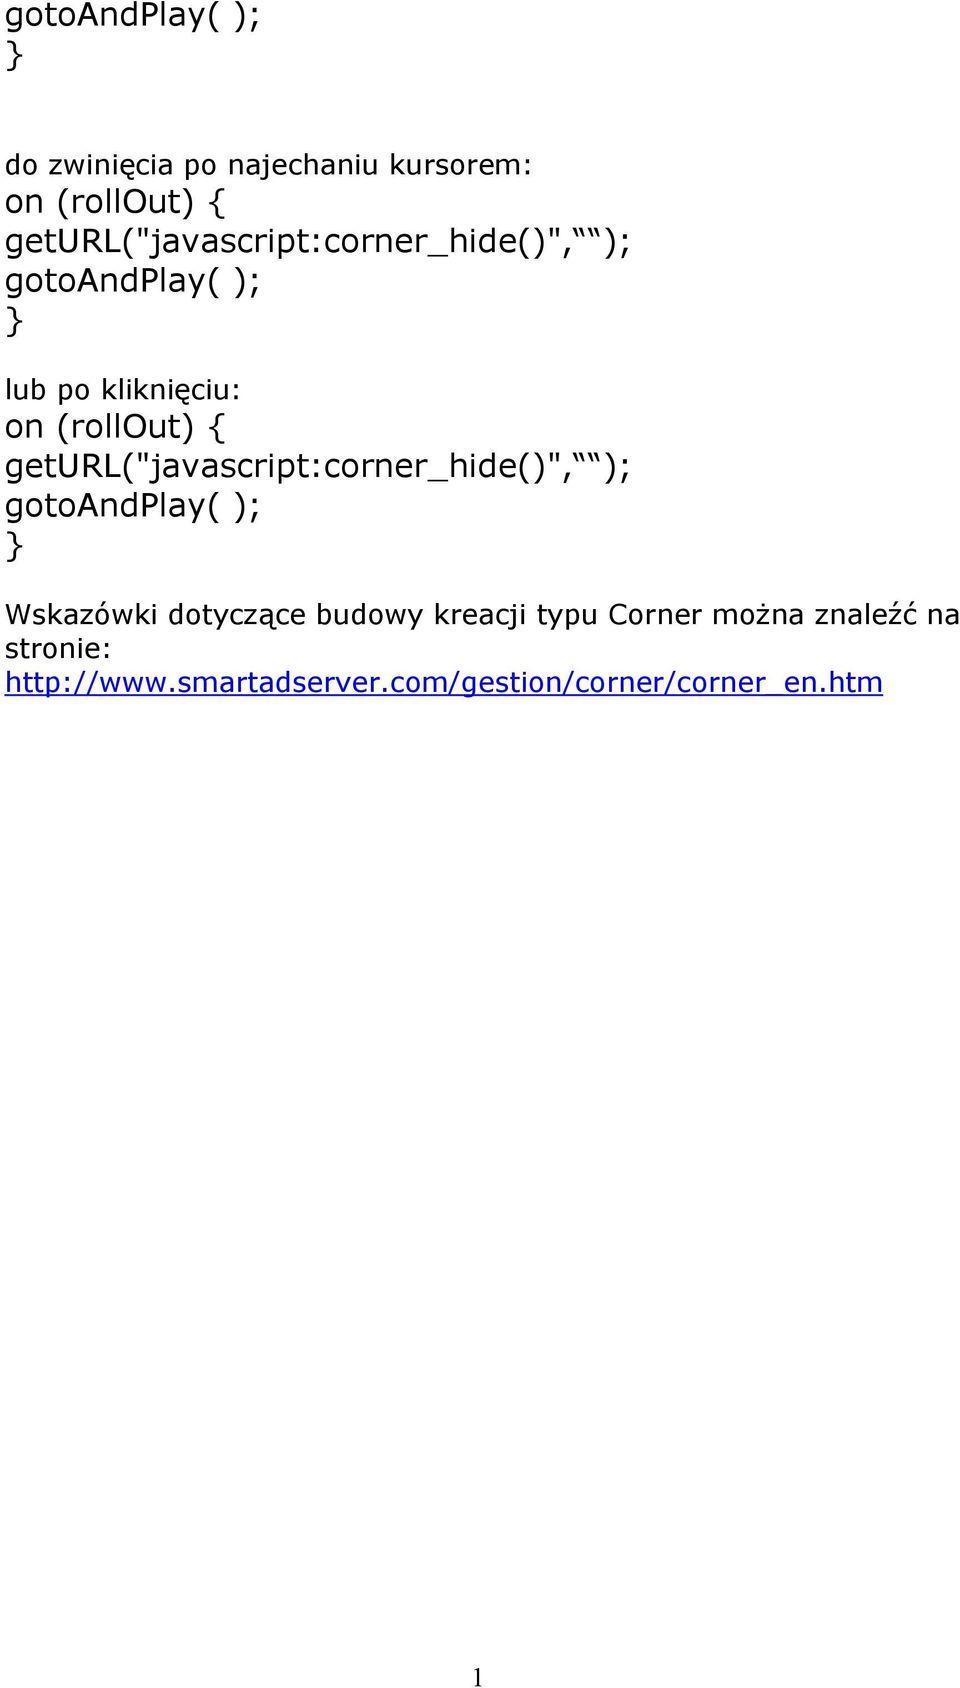 { geturl("javascript:corner_hide()", ); gotoandplay( ); Wskazówki dotyczące budowy